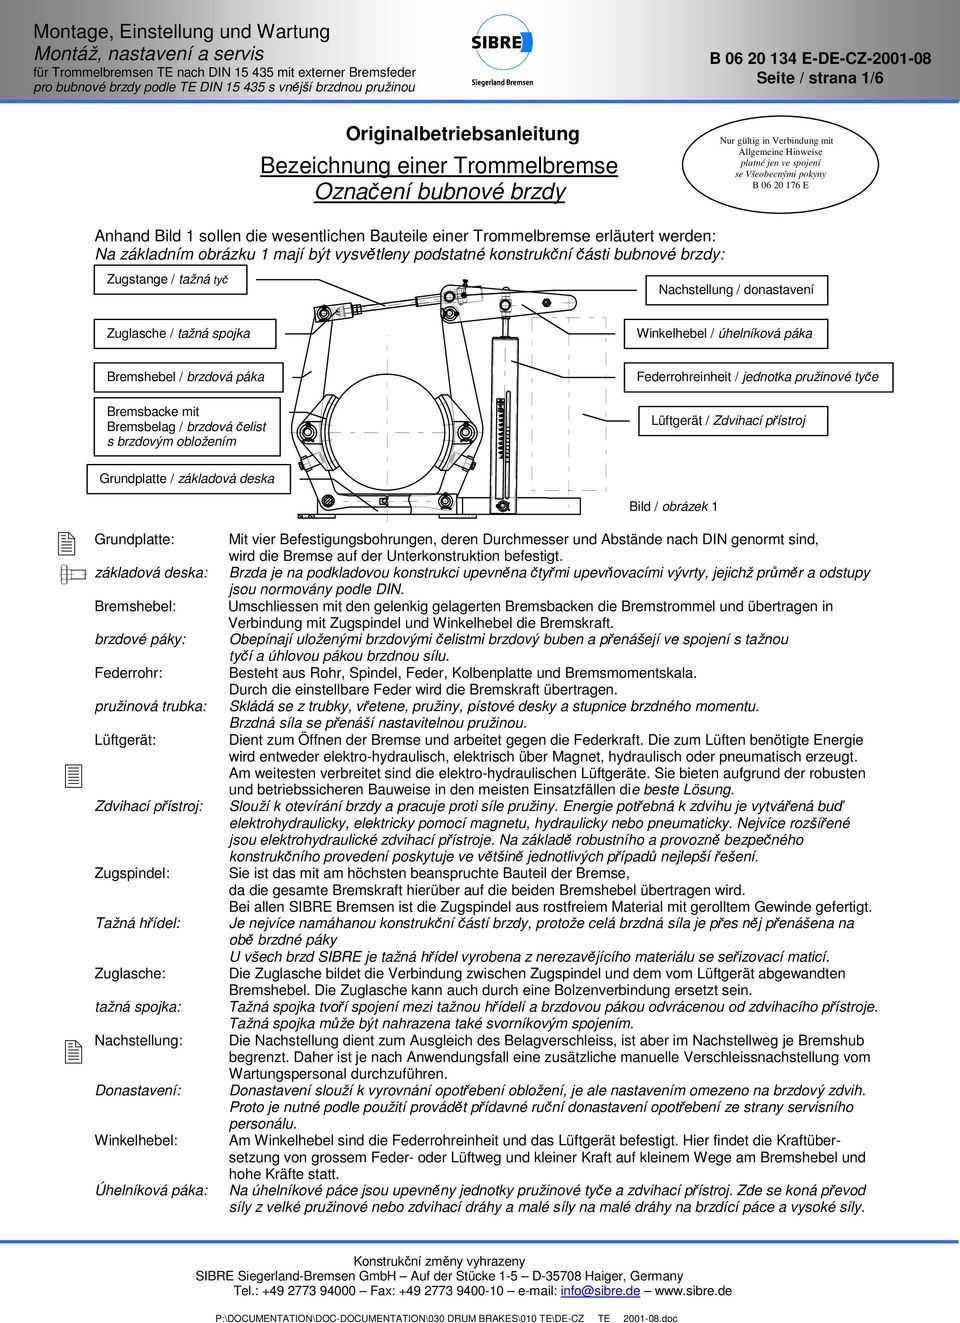 páka Bremsbacke mit Bremsbelag / brzdová čelist s brzdovým obložením Federrohreinheit / jednotka pružinové tyče Lüftgerät / Zdvihací přístroj Grundplatte / základová deska Grundplatte: základová